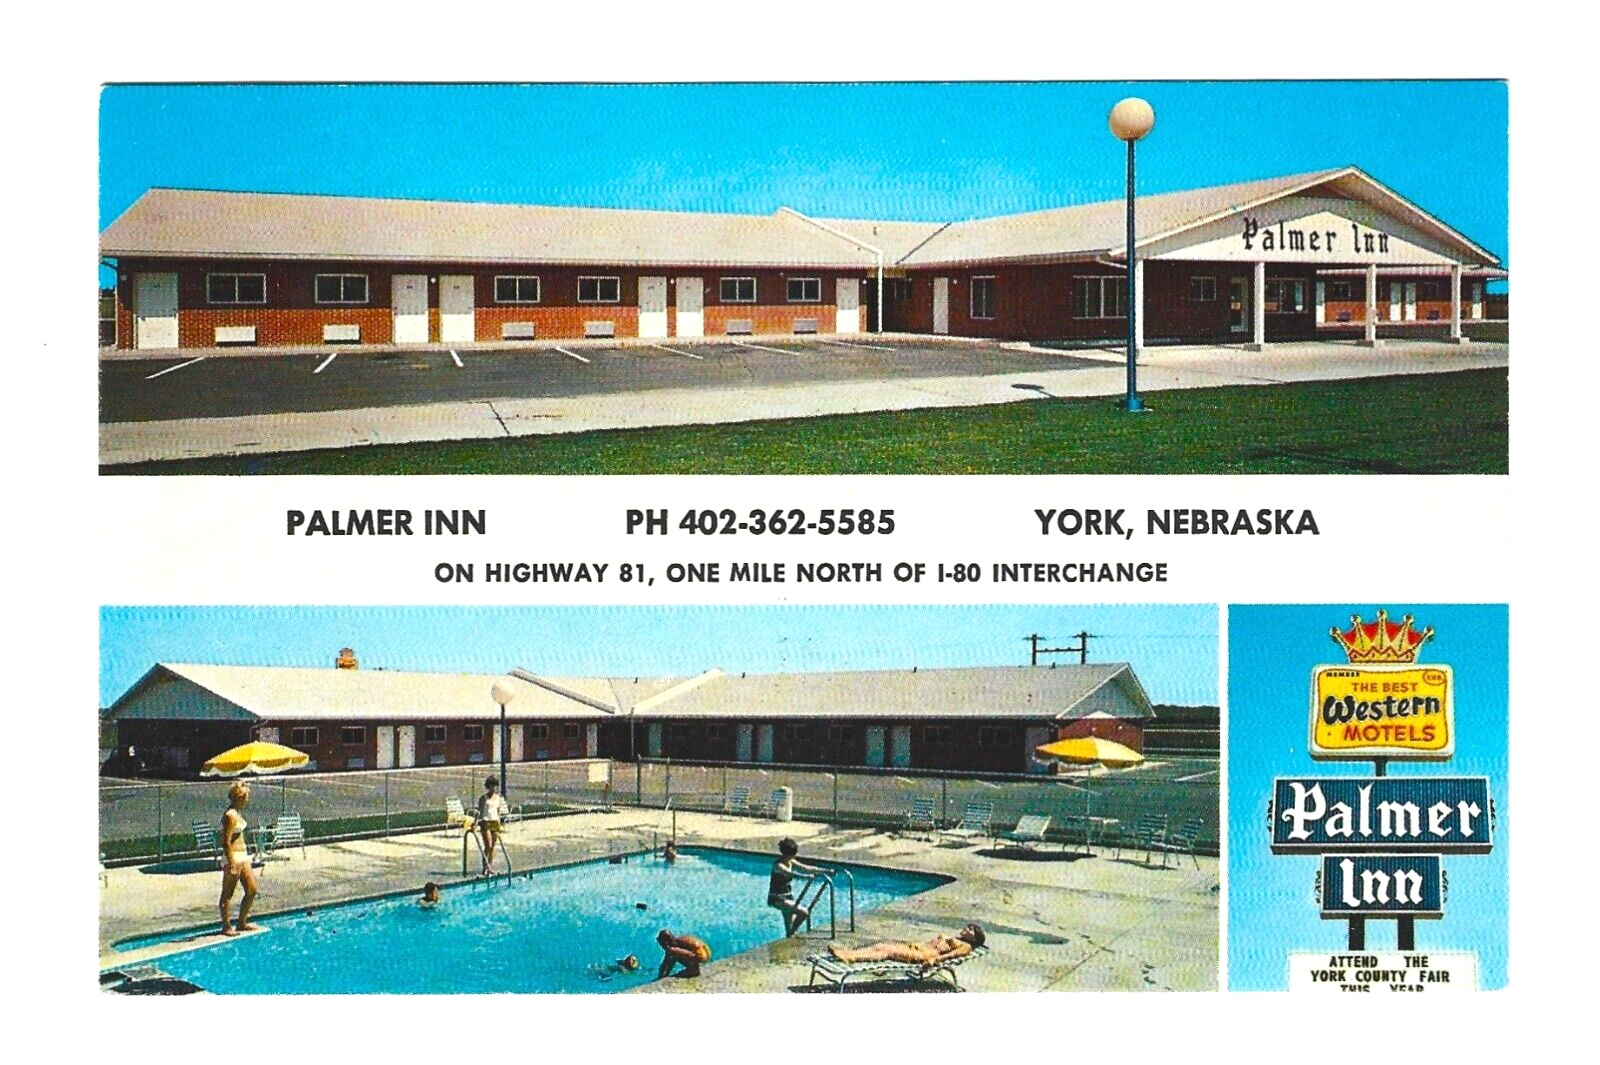 PALMER INN, YORK, NEBRASKA – Swimming Pool - 1960s Multiview Postcard